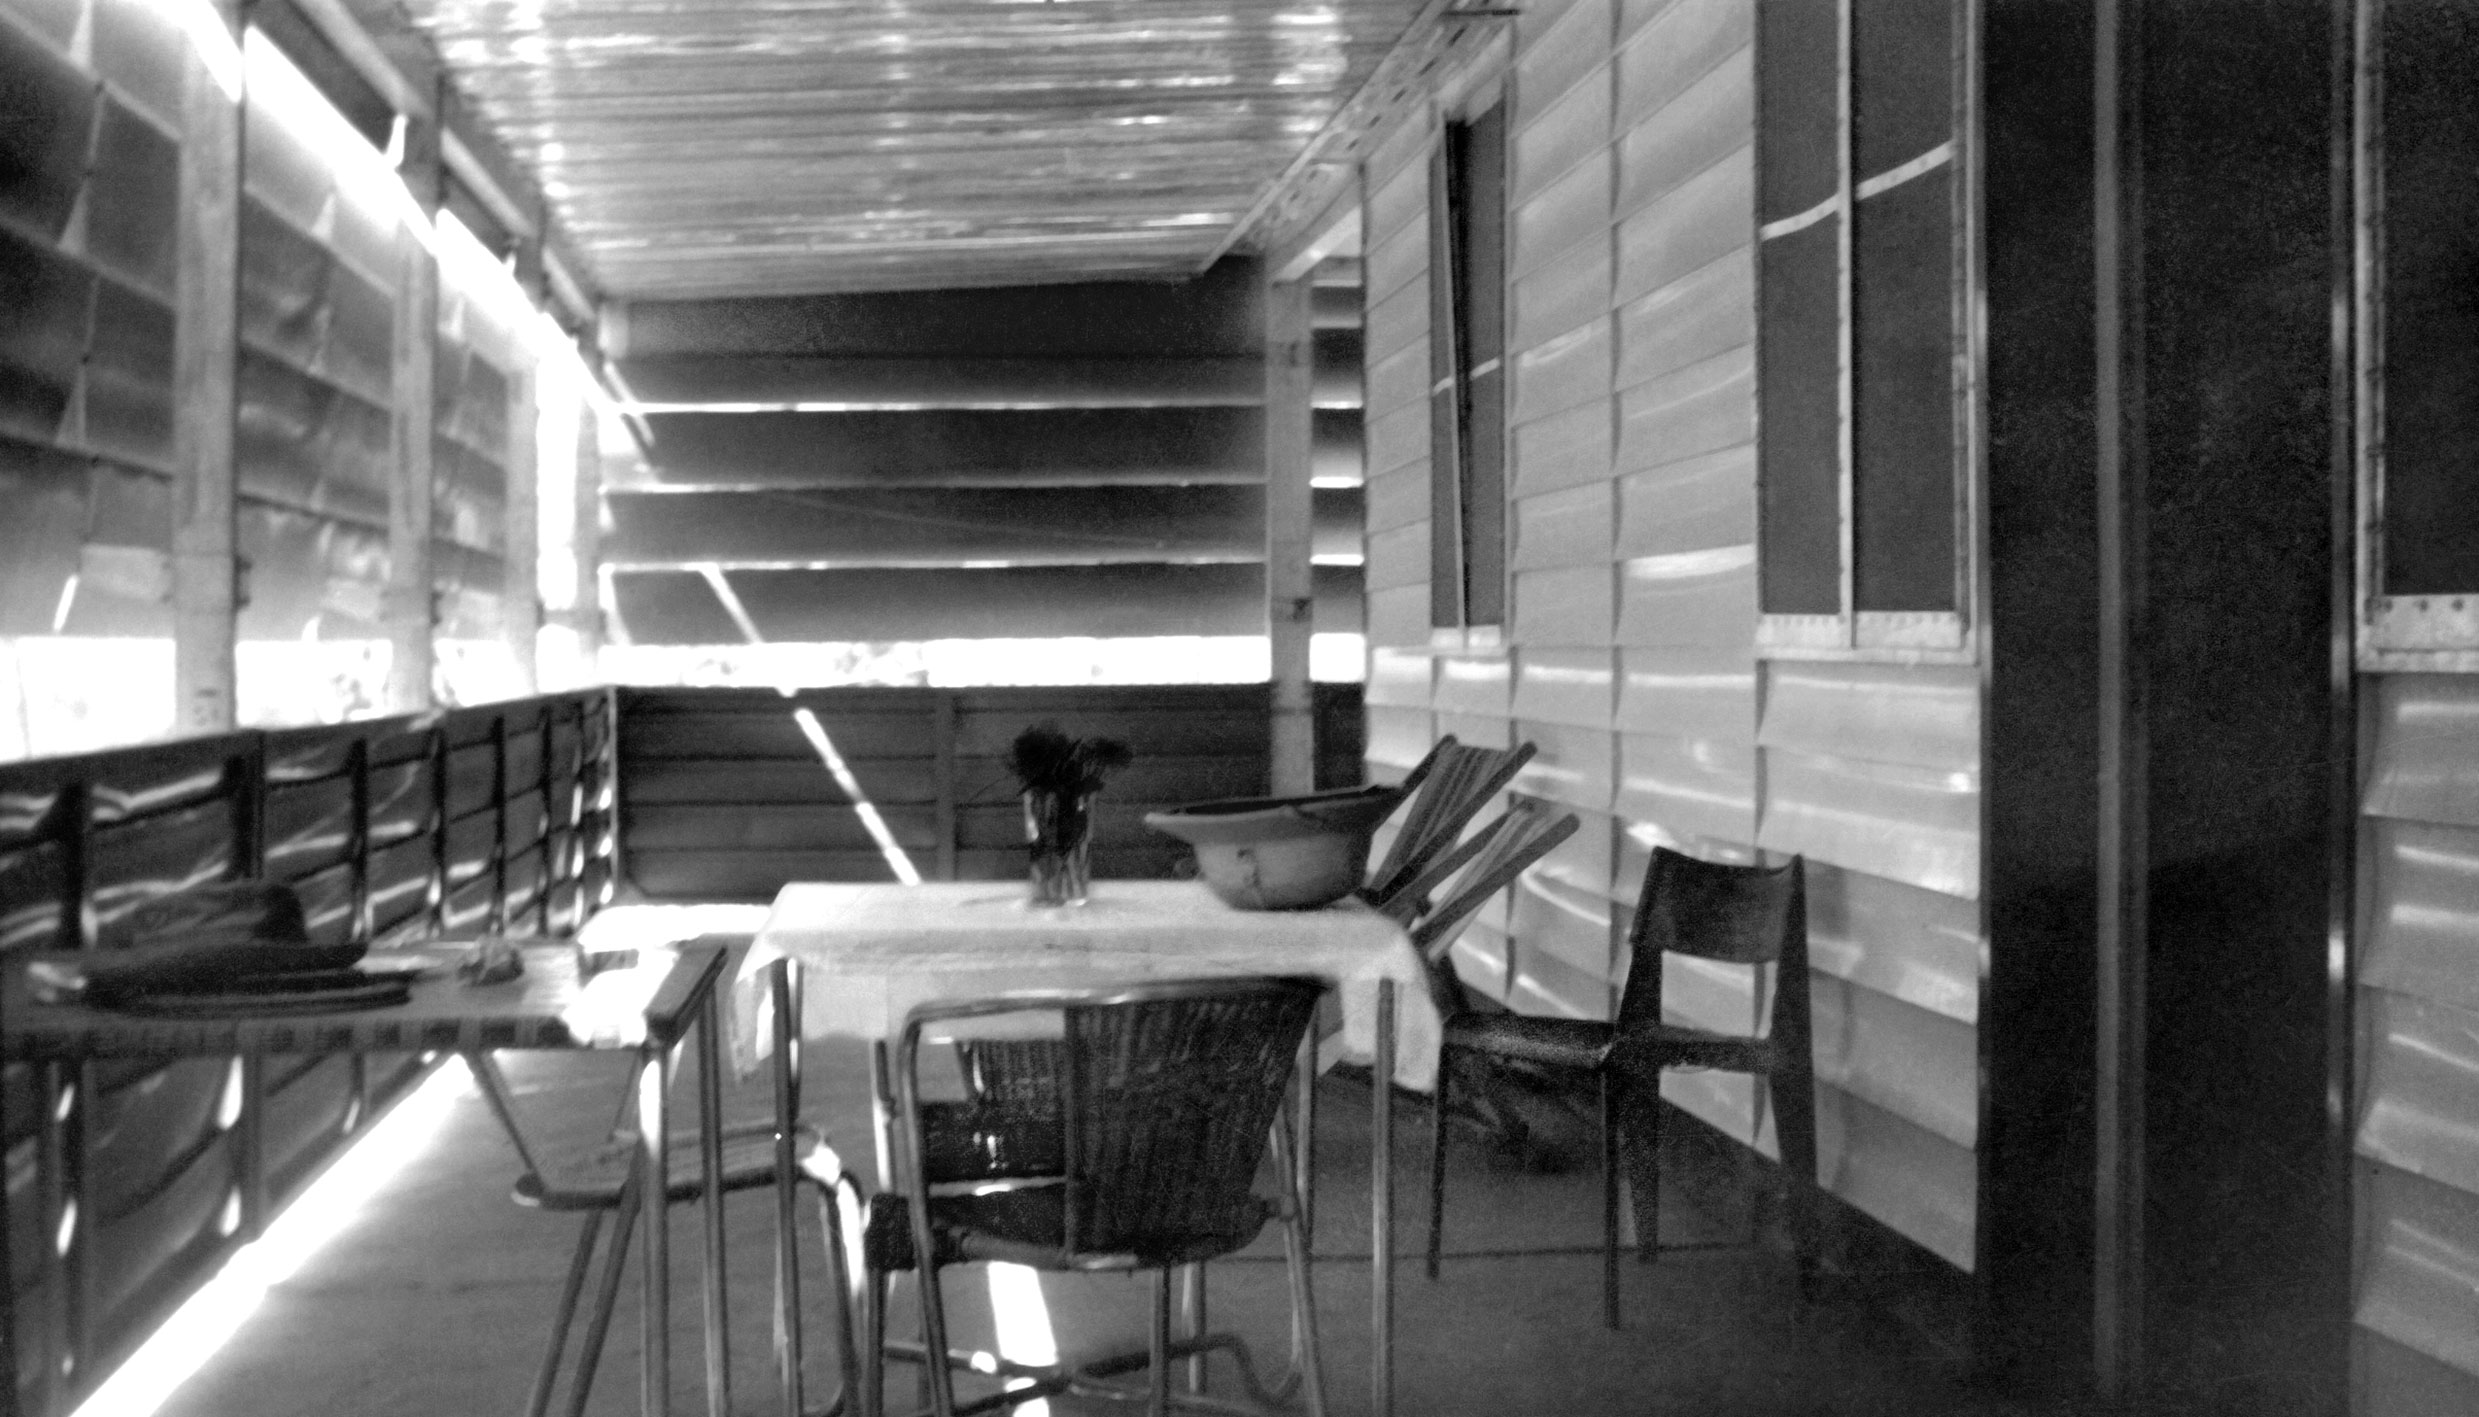 Maison préfabriquée de la société OPEC, Niamey. Galerie extérieure équipée de brise-soleil des Ateliers Jean Prouvé et d’une chaise Cafétéria n° 300, variante Tropique pour l’outre-mer, s. d.